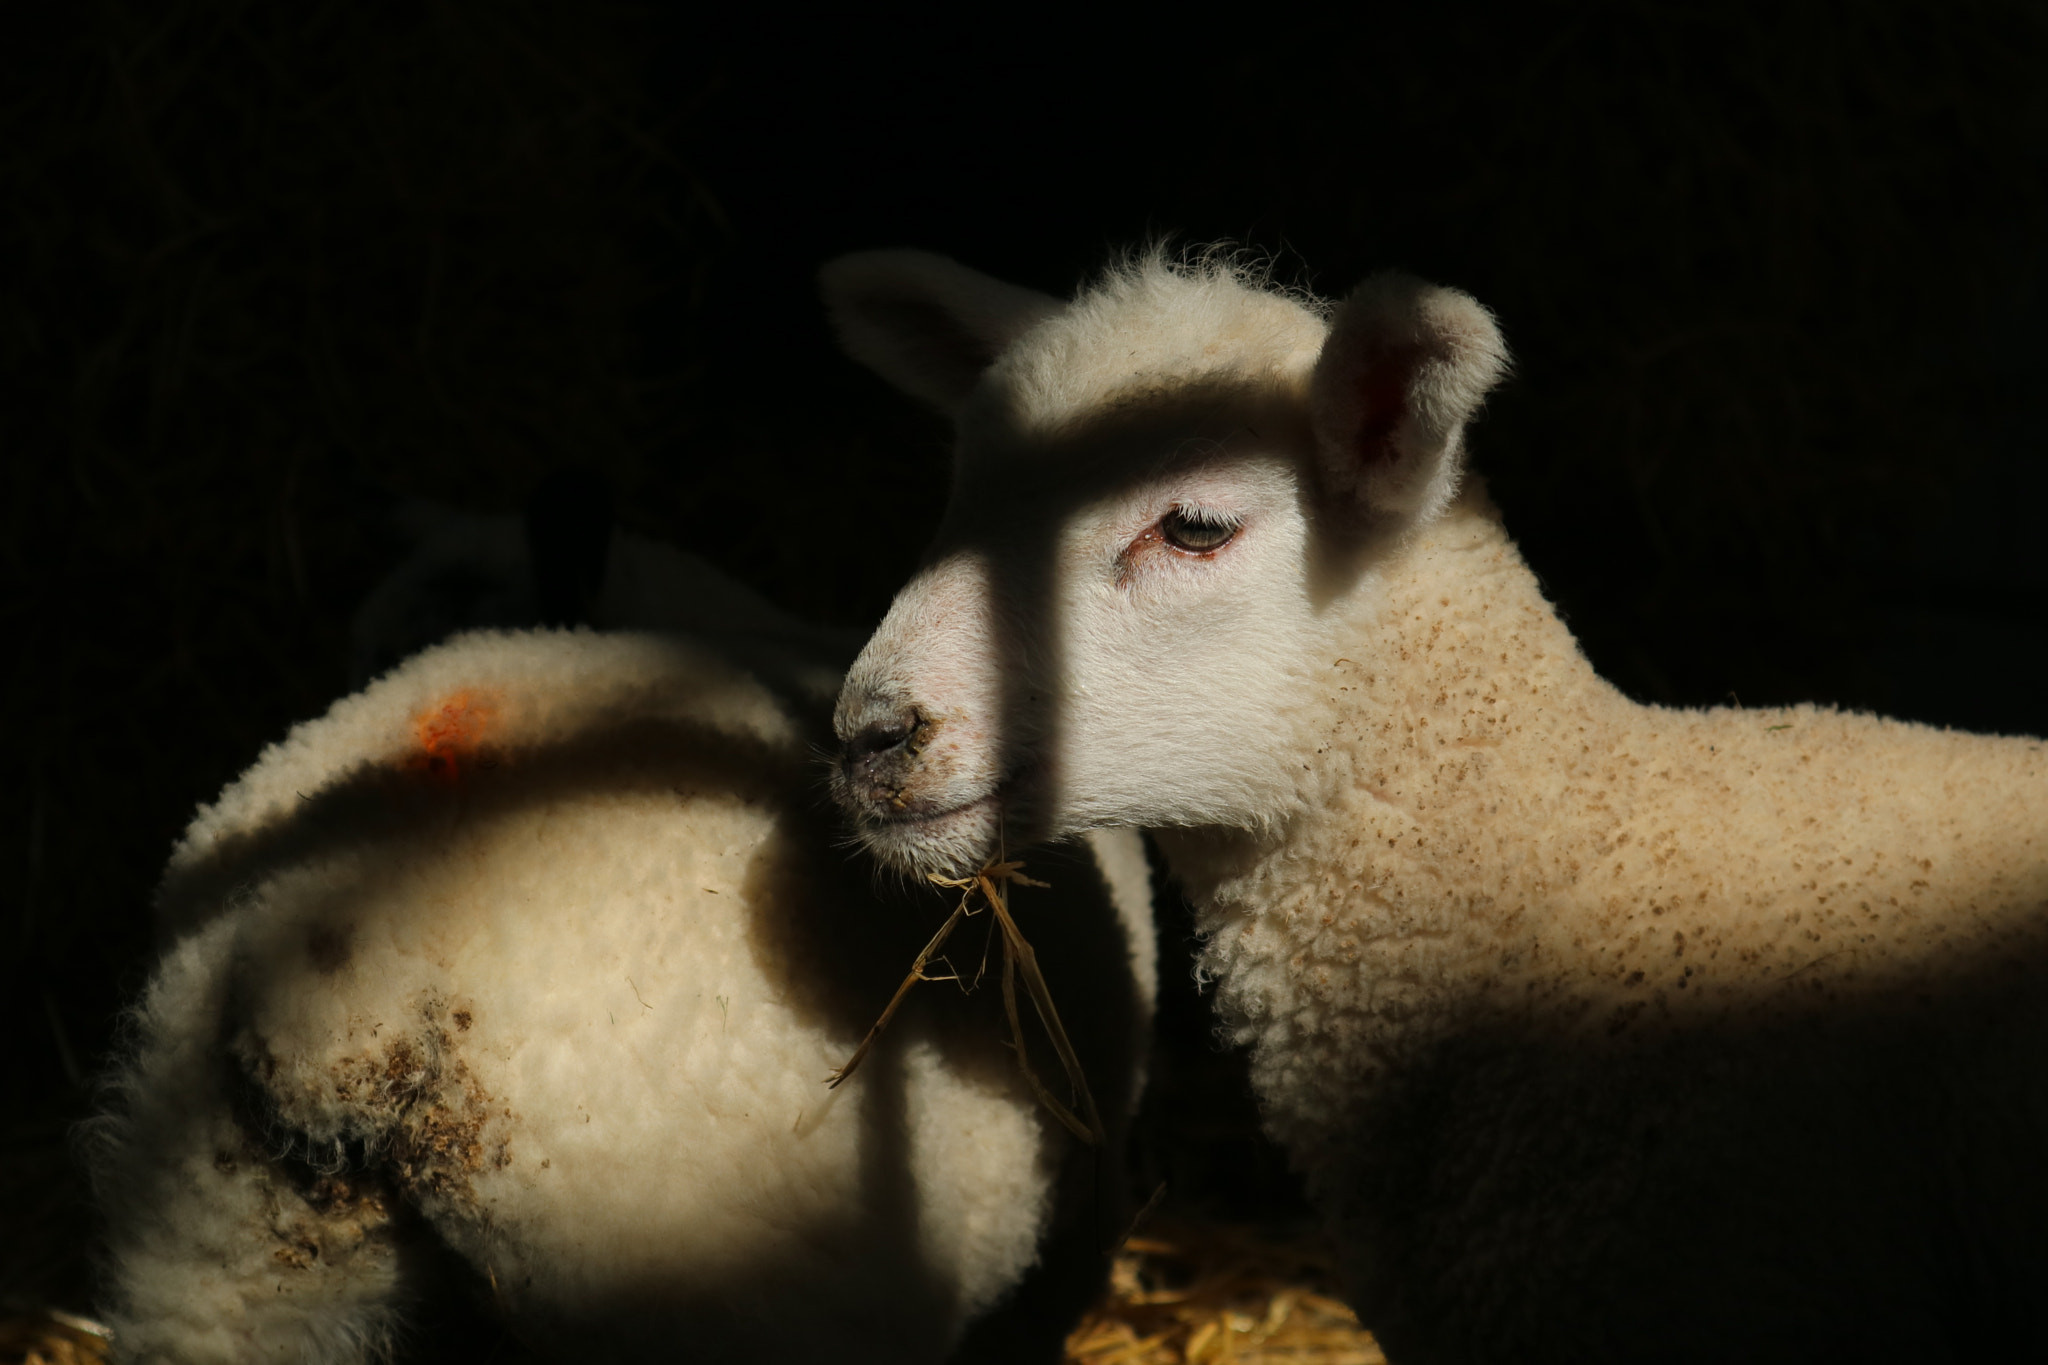 Canon EOS M3 sample photo. Sheep photography